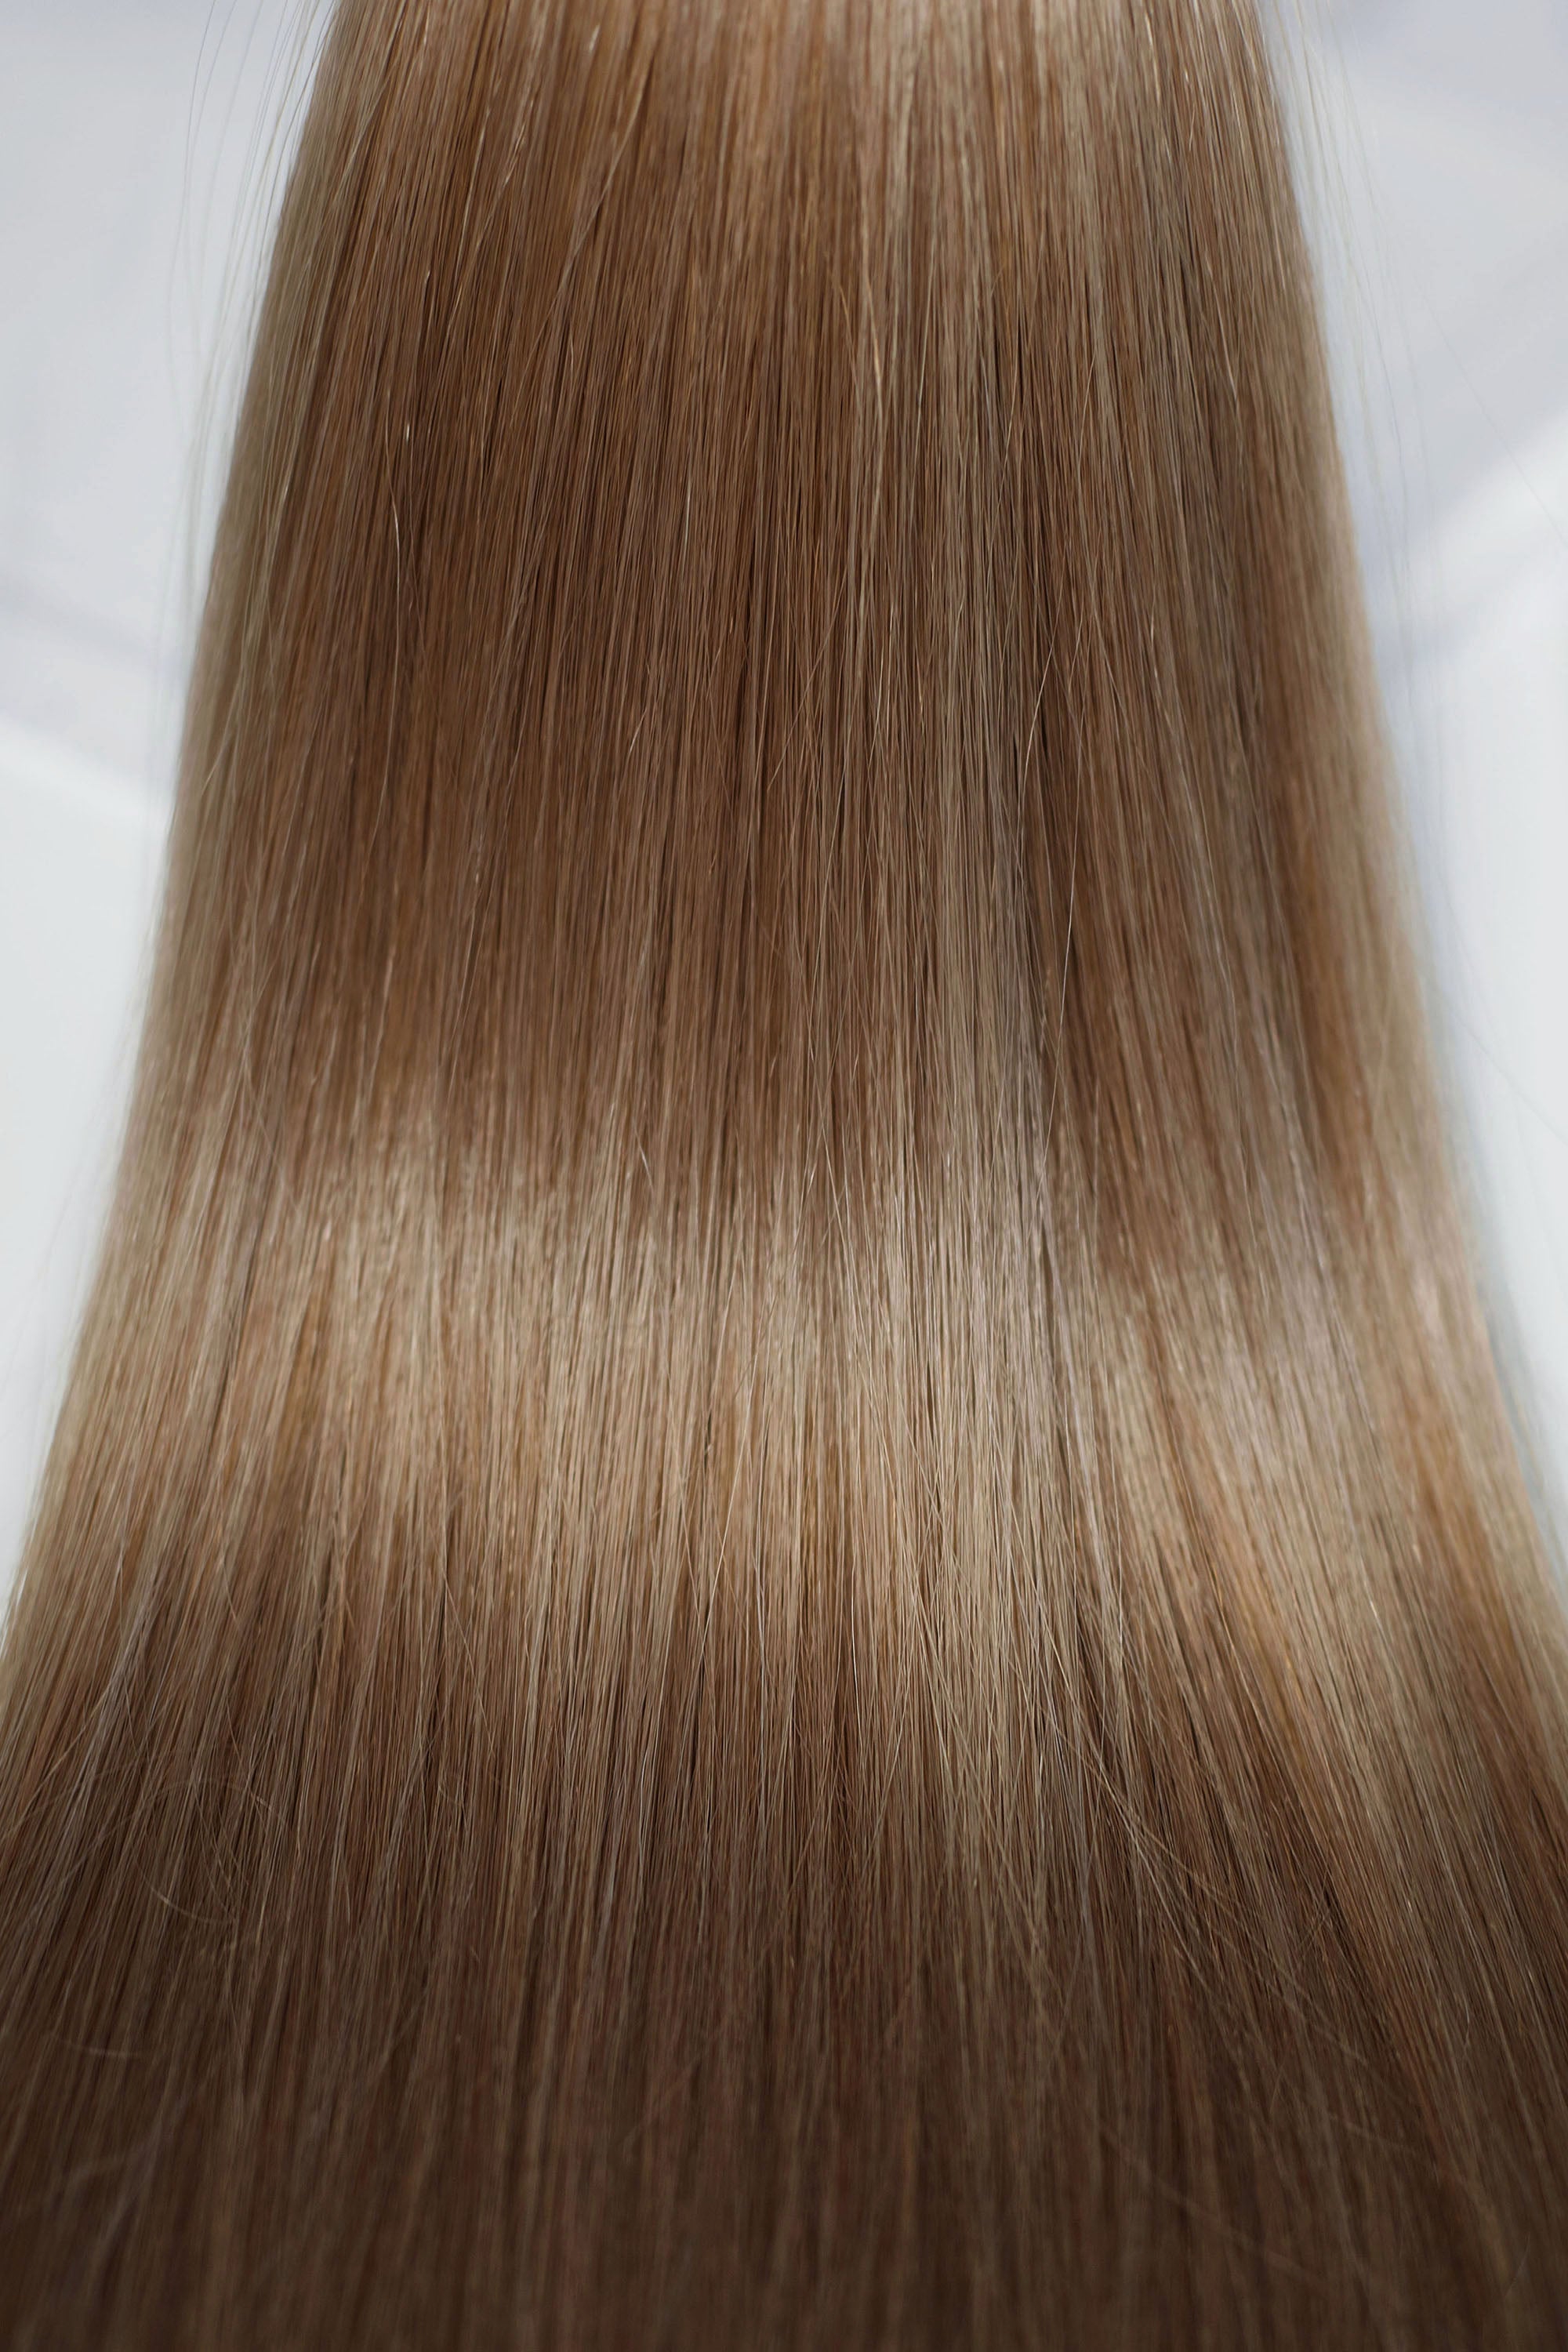 Behair professional Bulk hair "Premium" 16" (40cm) Natural Straight Light Ash Brown #10 - 25g hair extensions